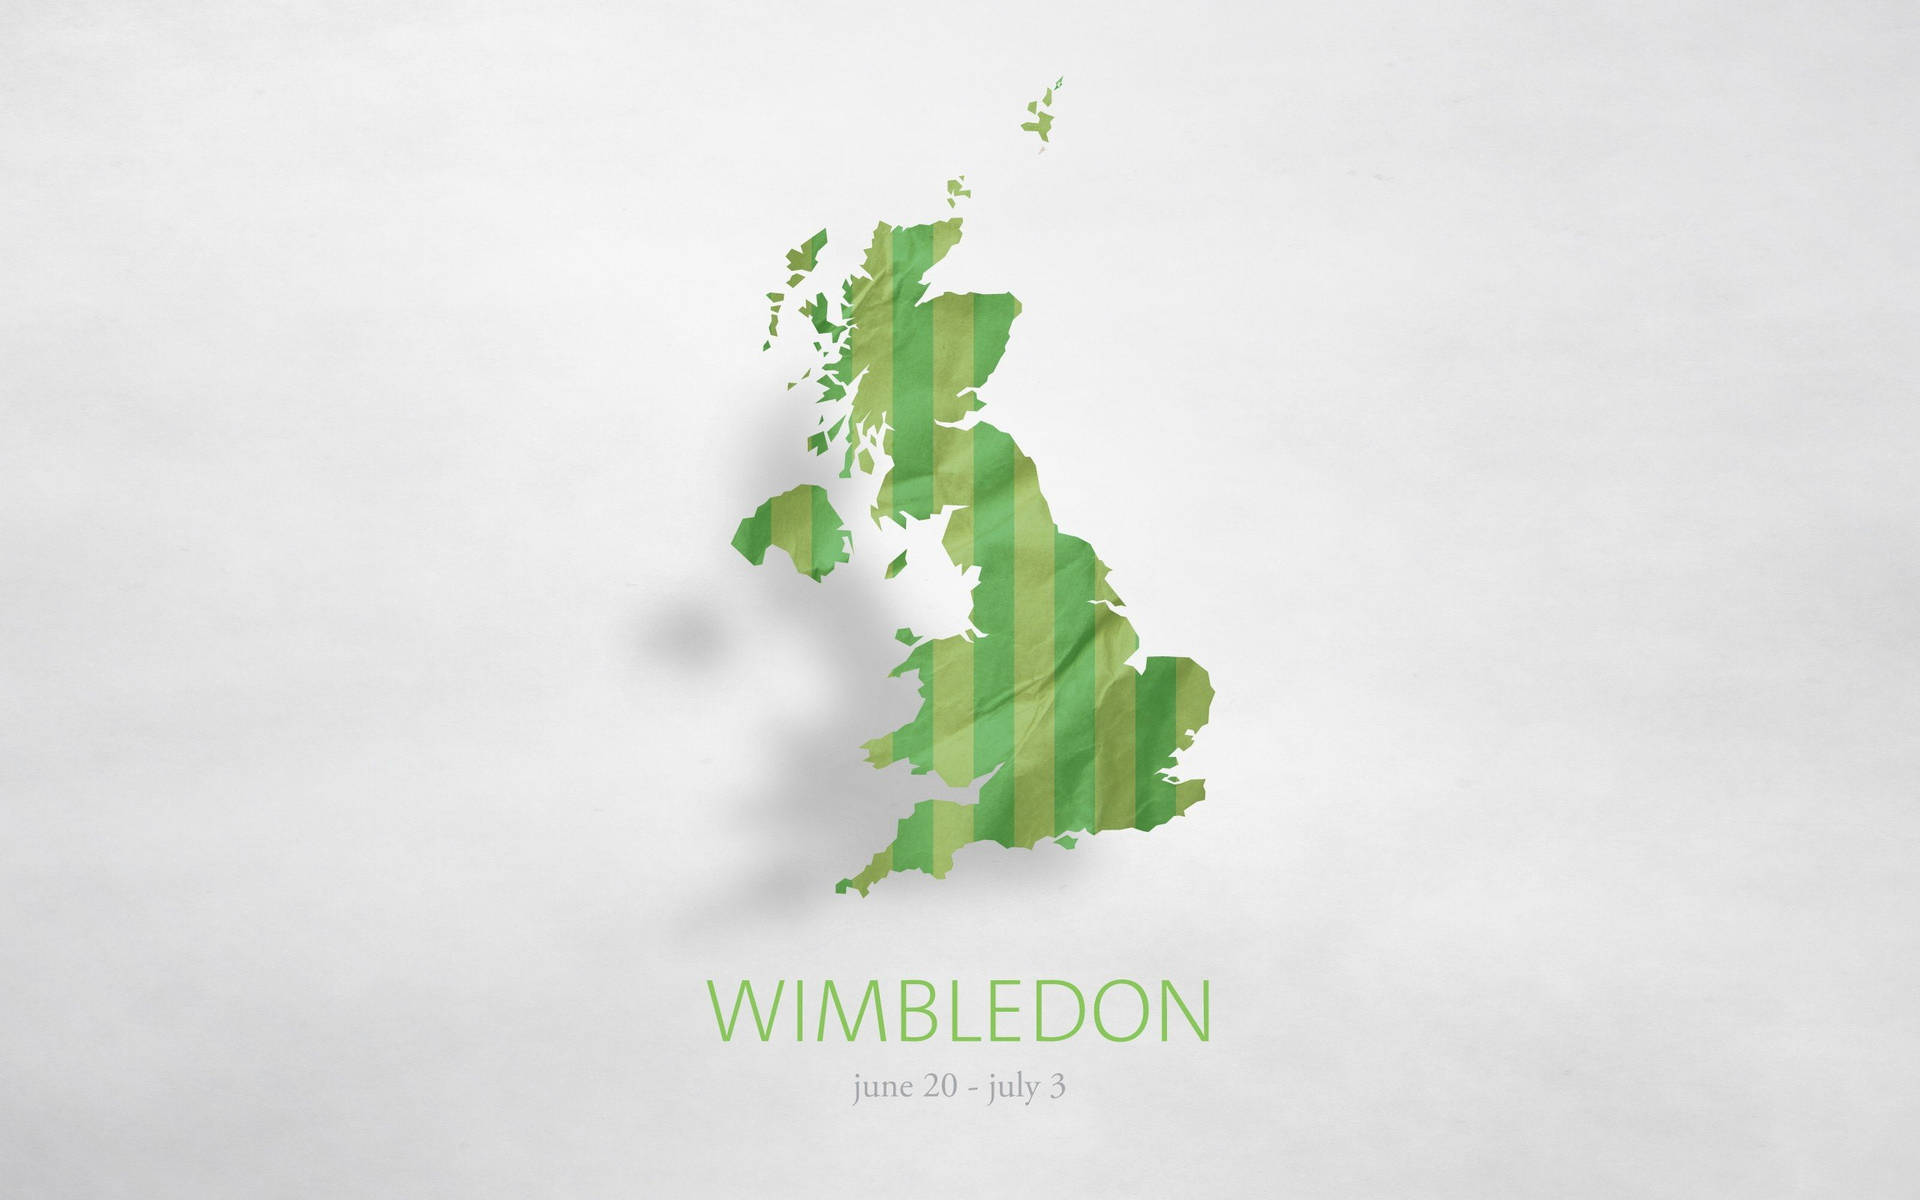 Wimbledon Map Of England Wallpaper